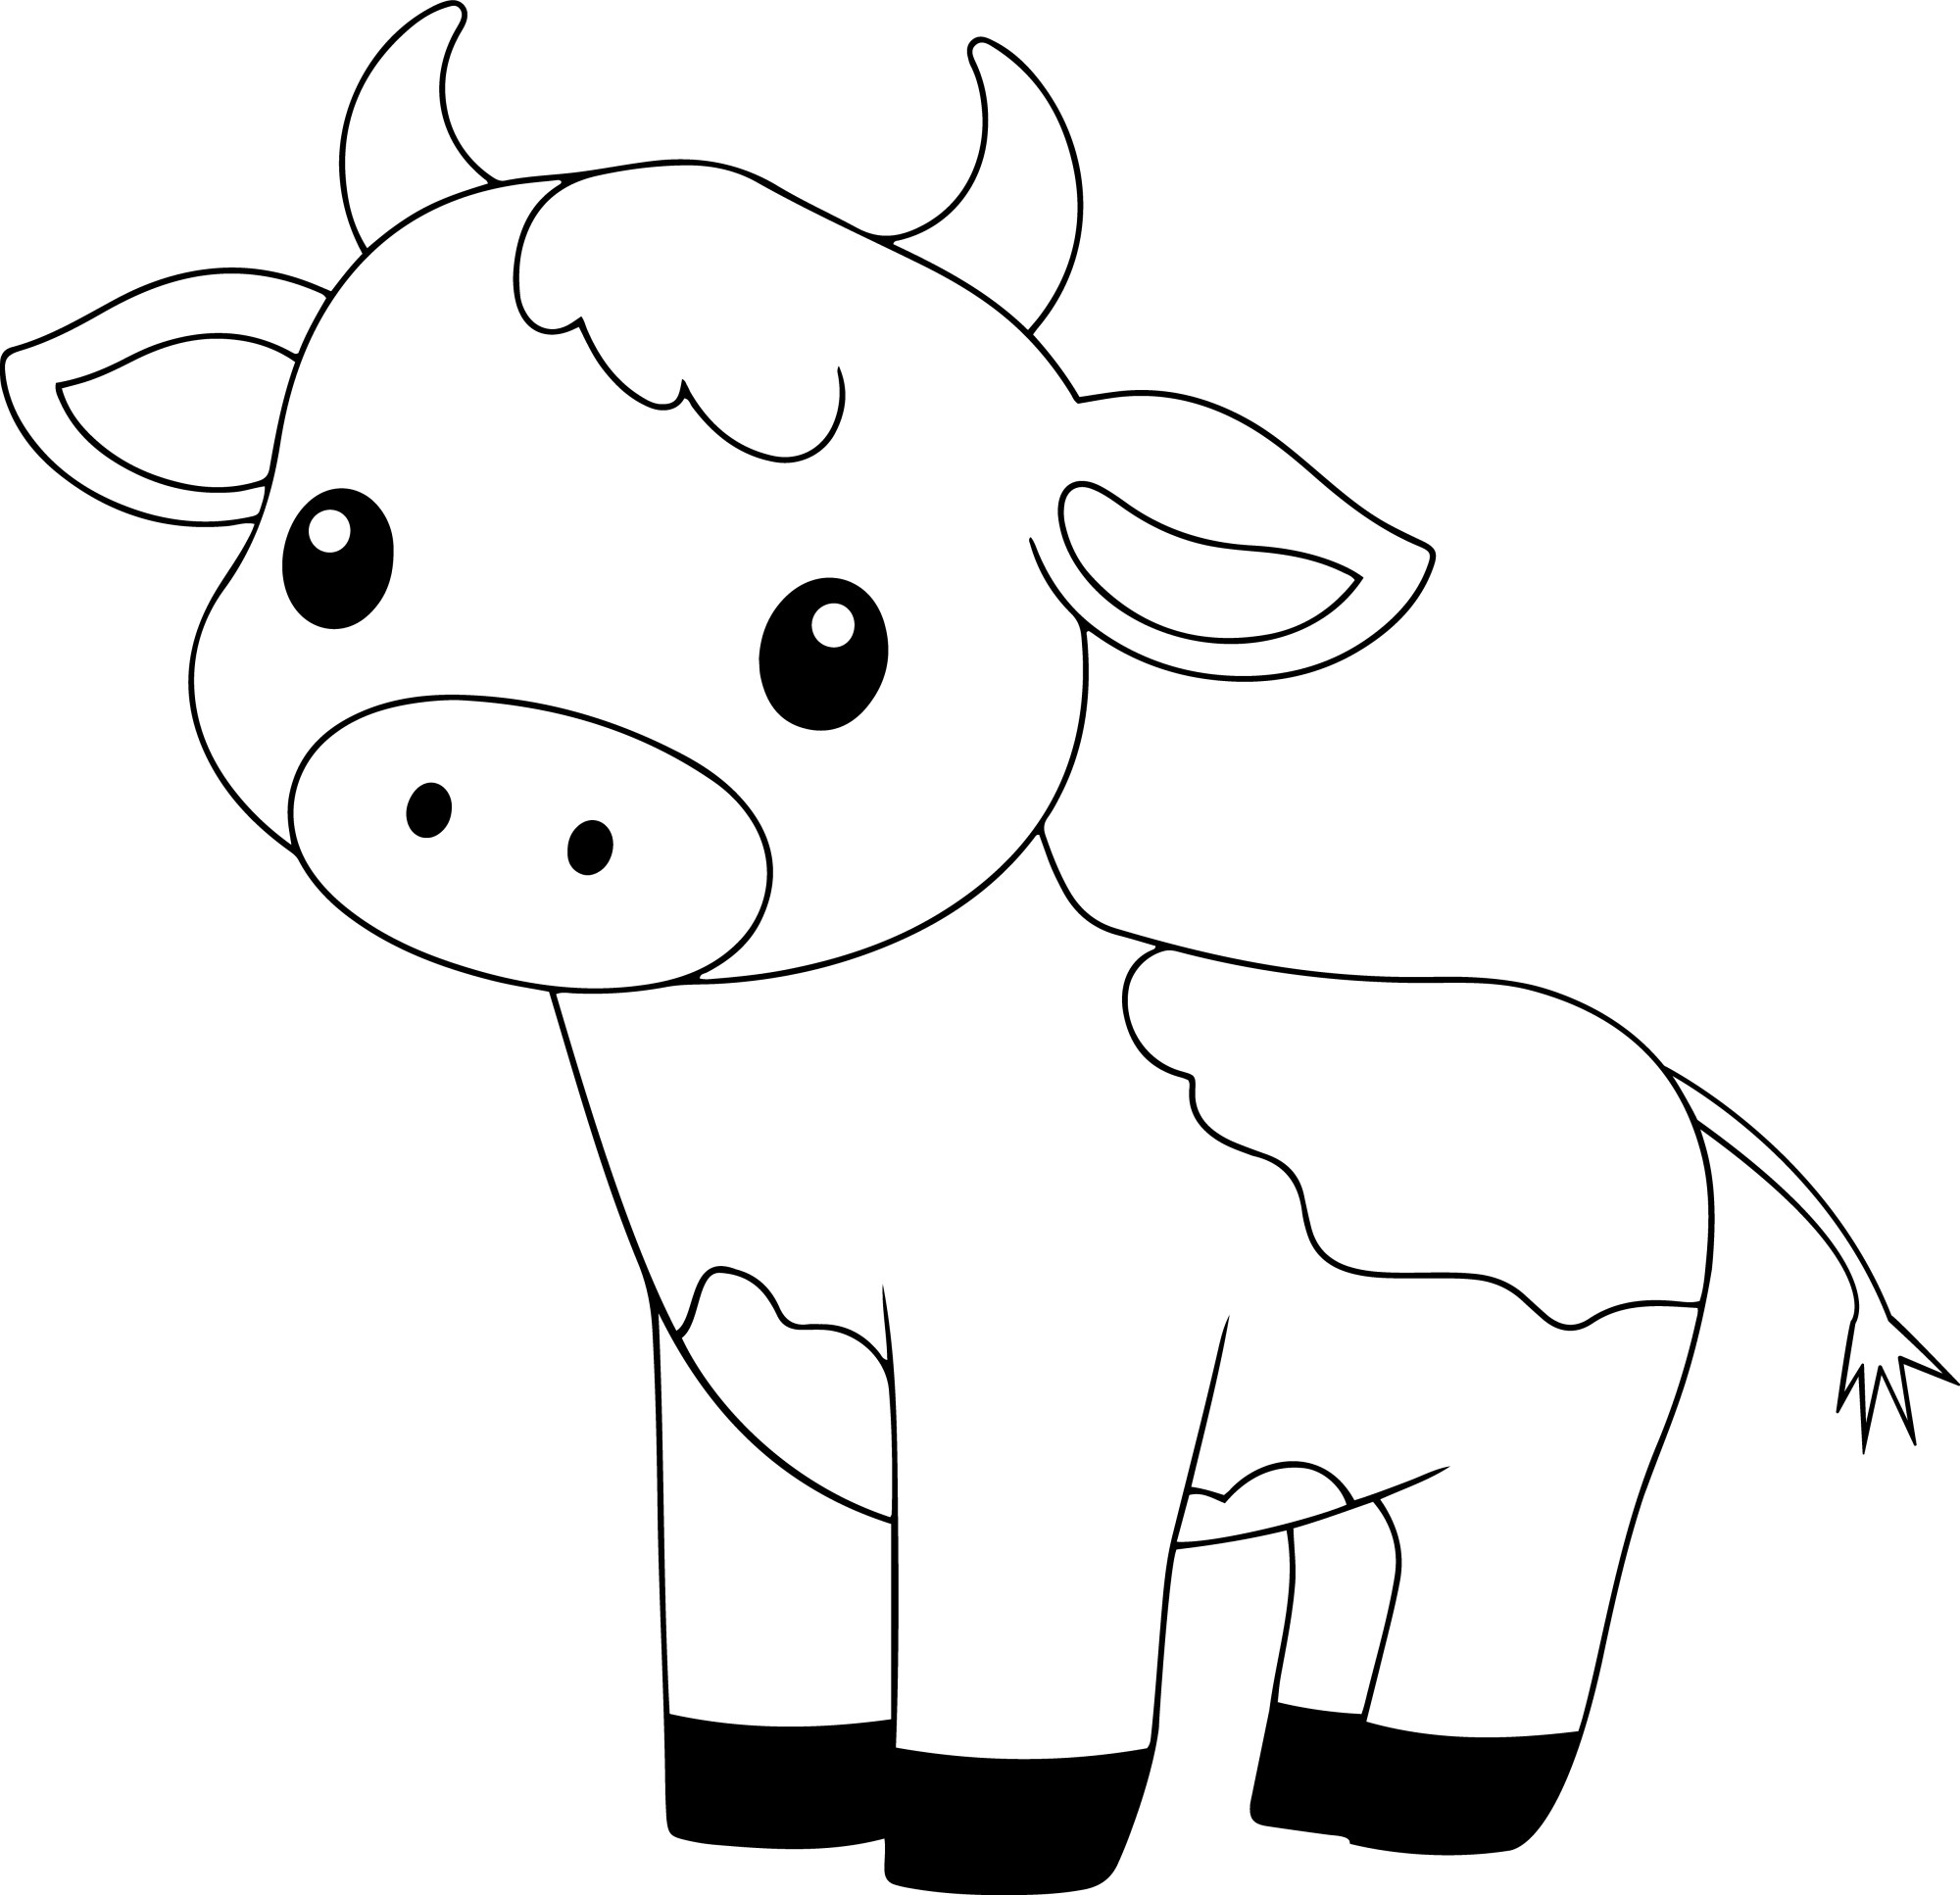 Раскраска для детей: мультяшная корова